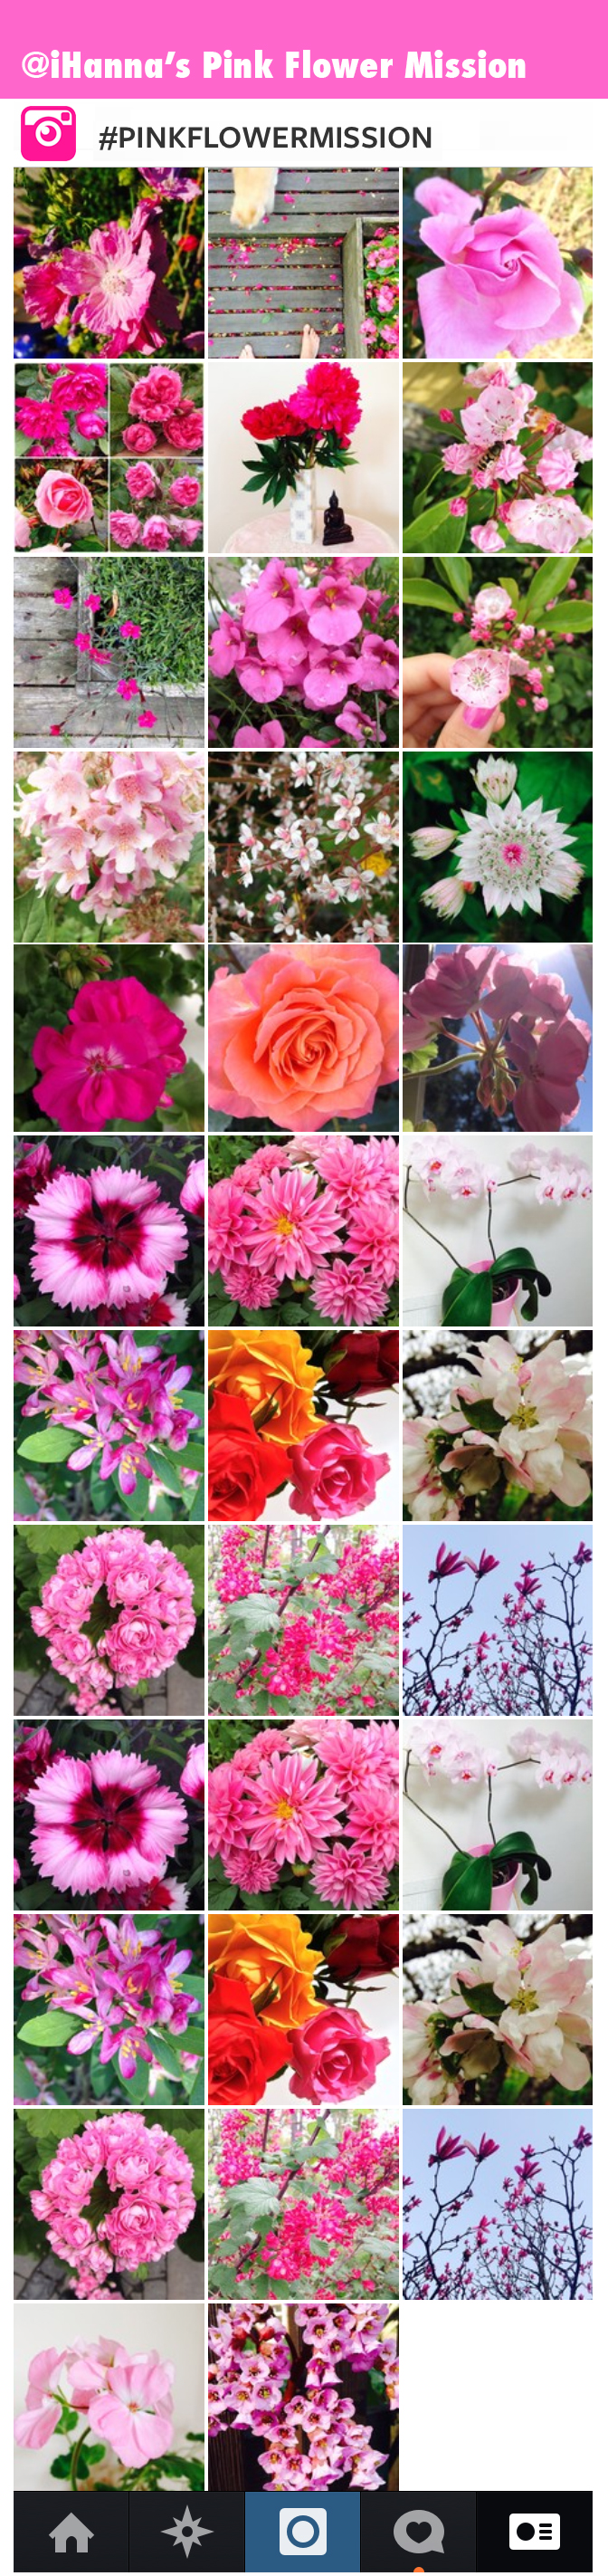 iHanna's #pinkflowermission project on instagram - so far (July 2014)